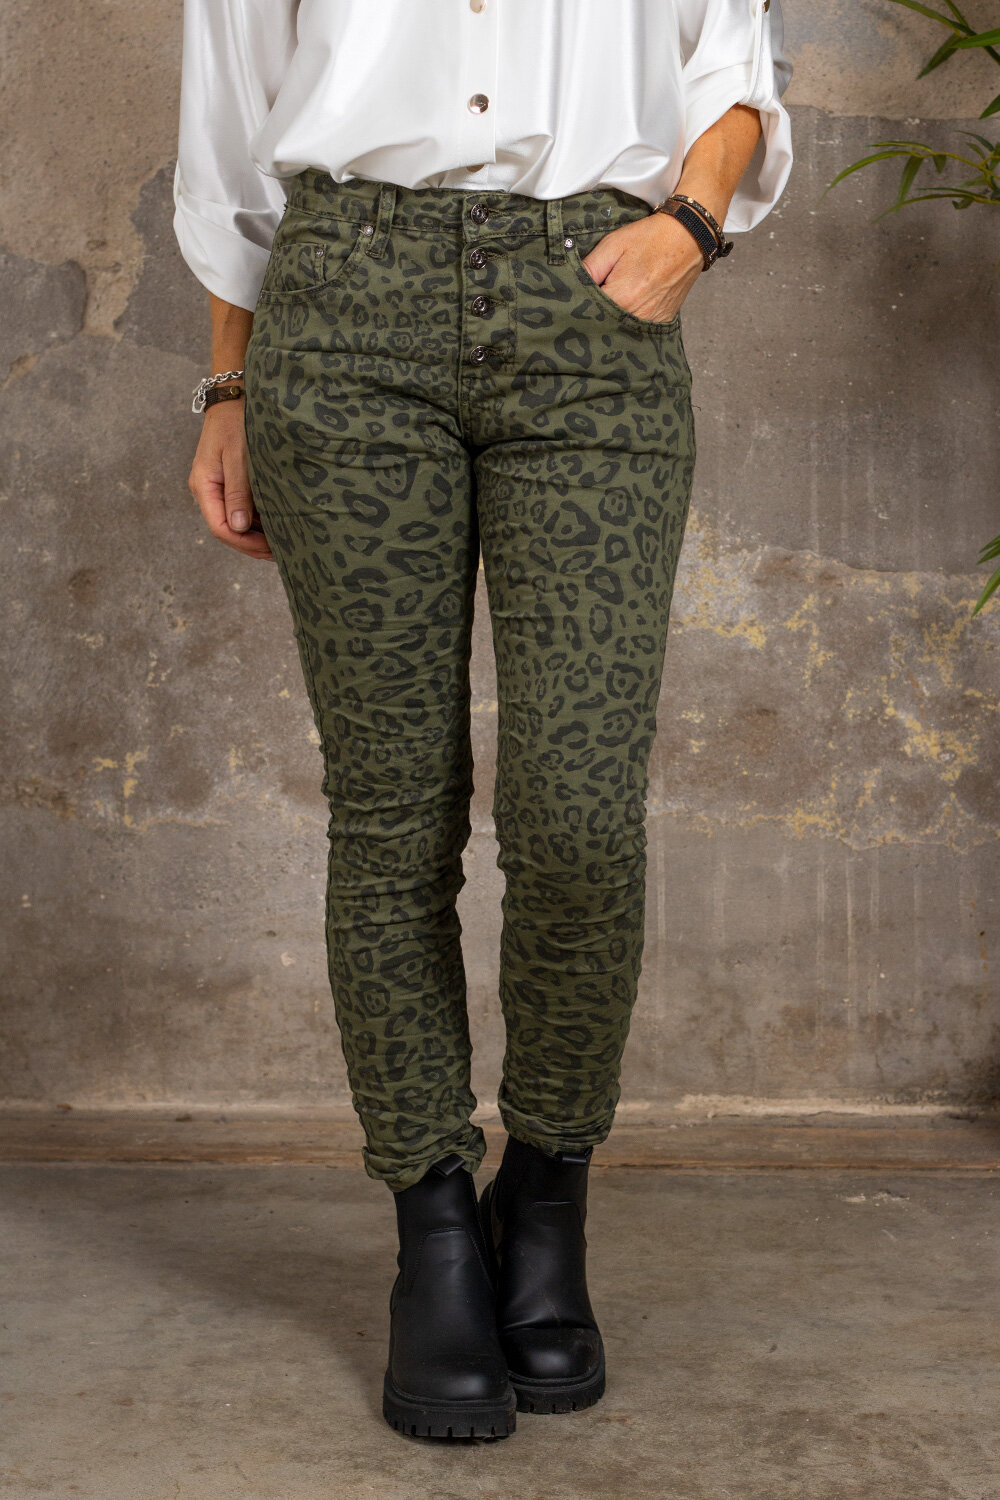 Pants 90089 - Leopard Print - Khaki